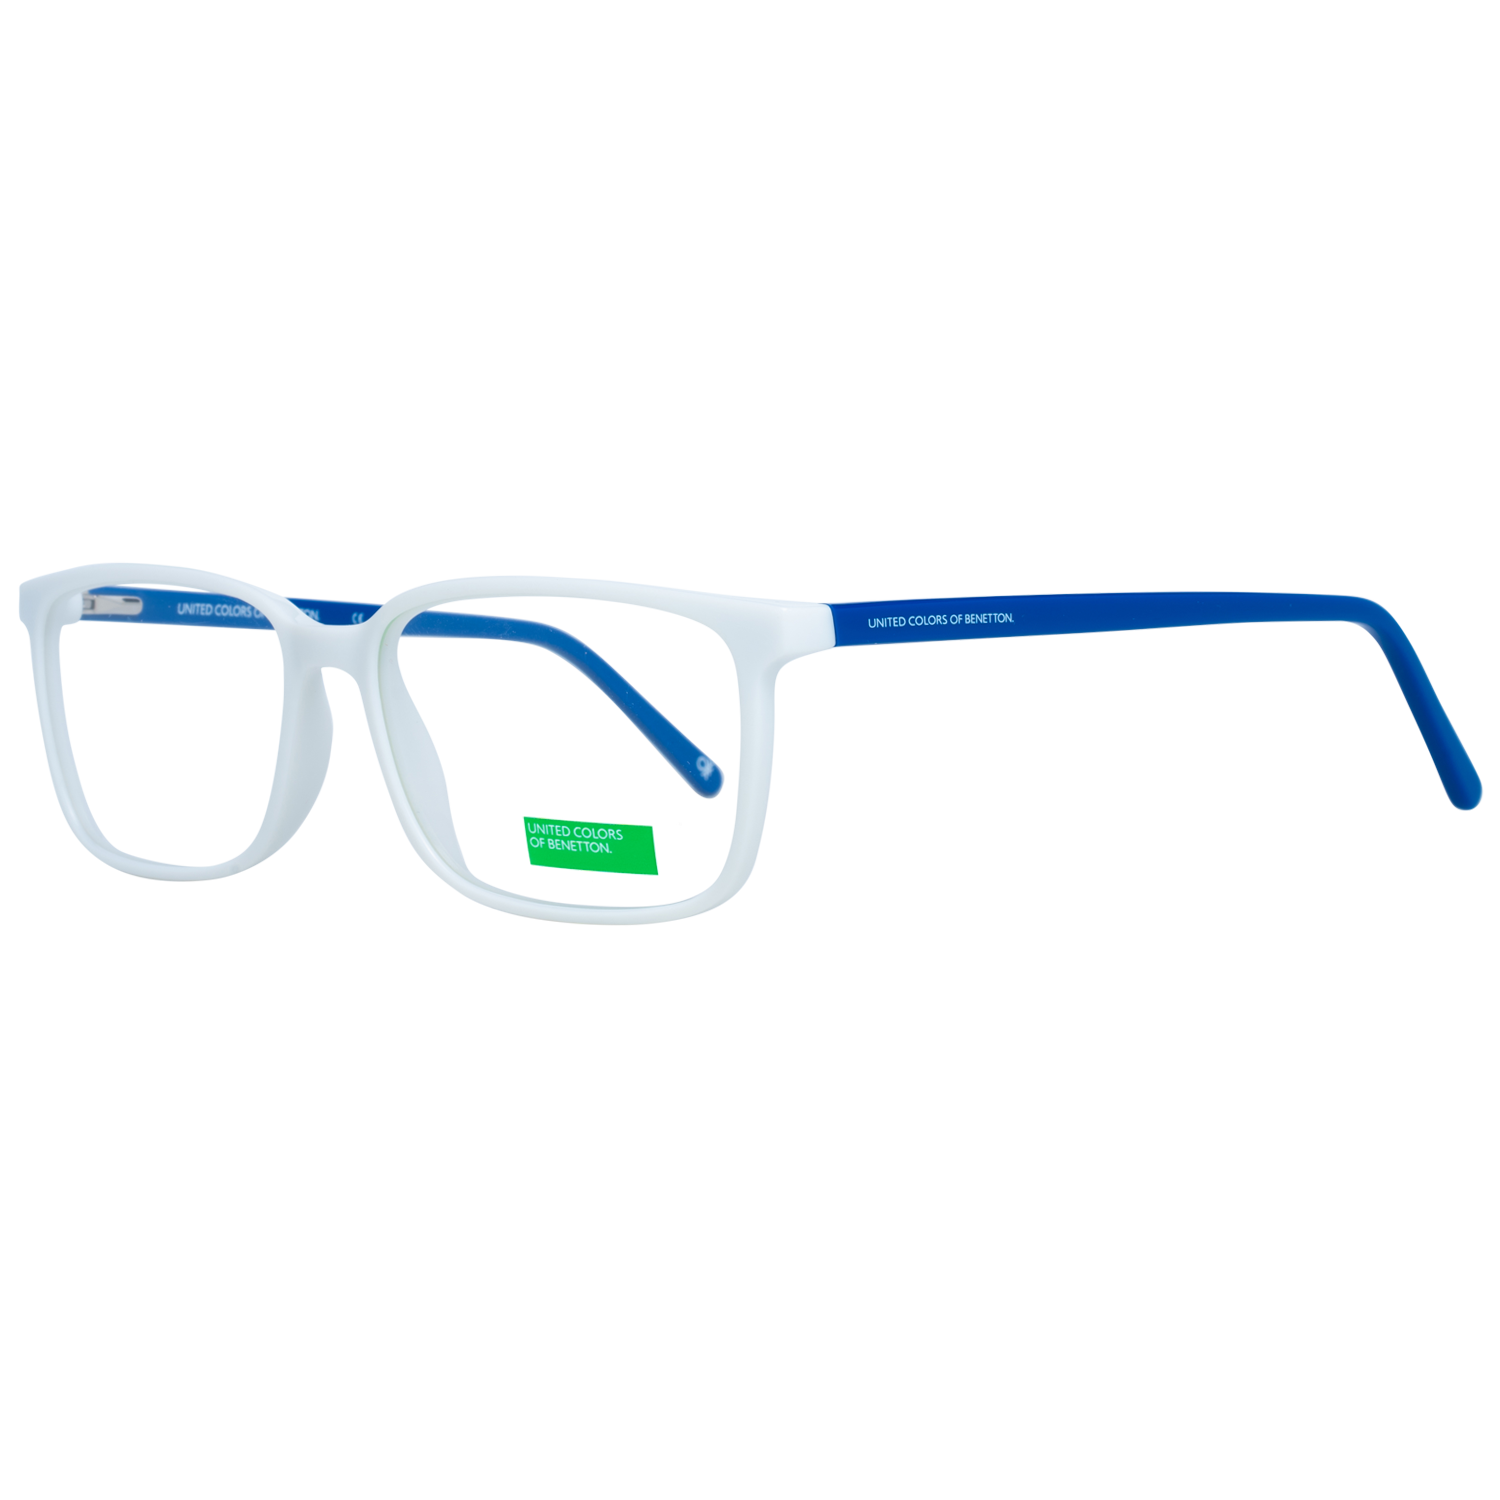 Benetton Frames Benetton Glasses Frames BEO1035 815 56 Eyeglasses Eyewear UK USA Australia 